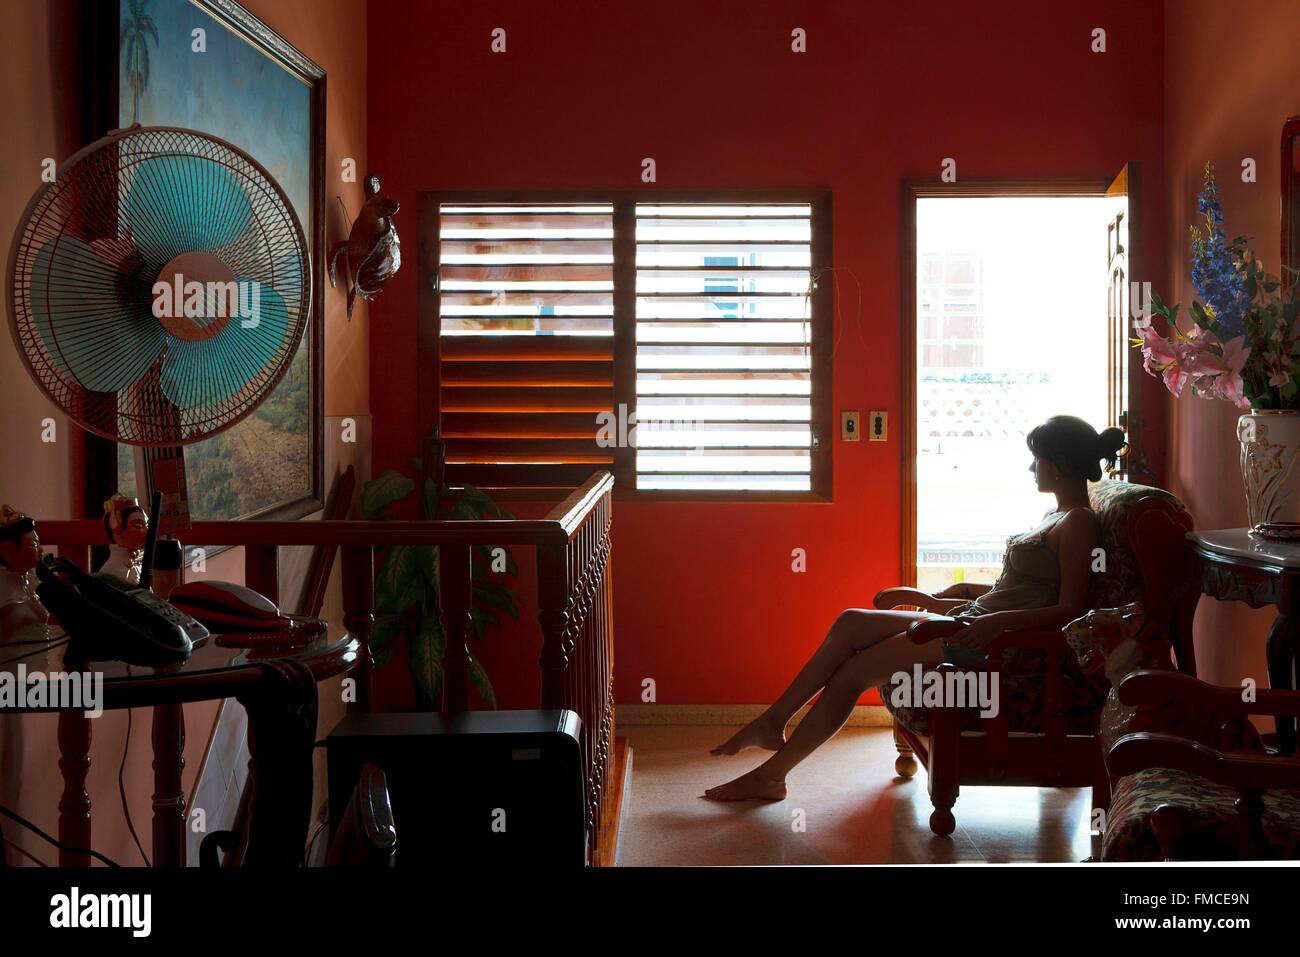 Cuba, La Havane, jeune femme assise sur une chaise confortable dans un appartement Banque D'Images